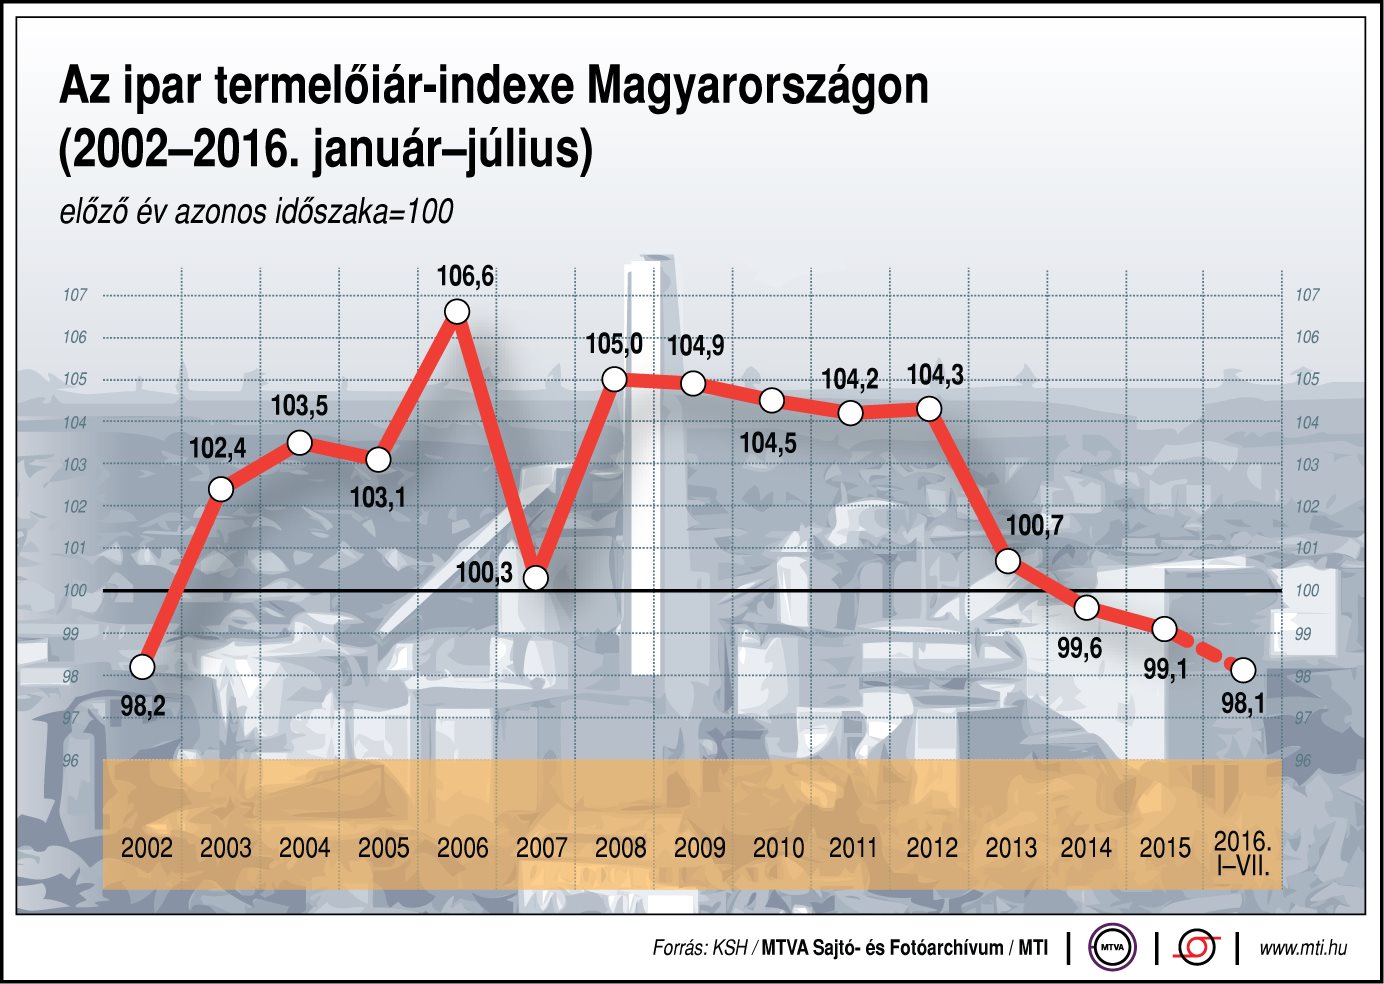 Az ipar termelőiár-indexe Magyarországon - ábra